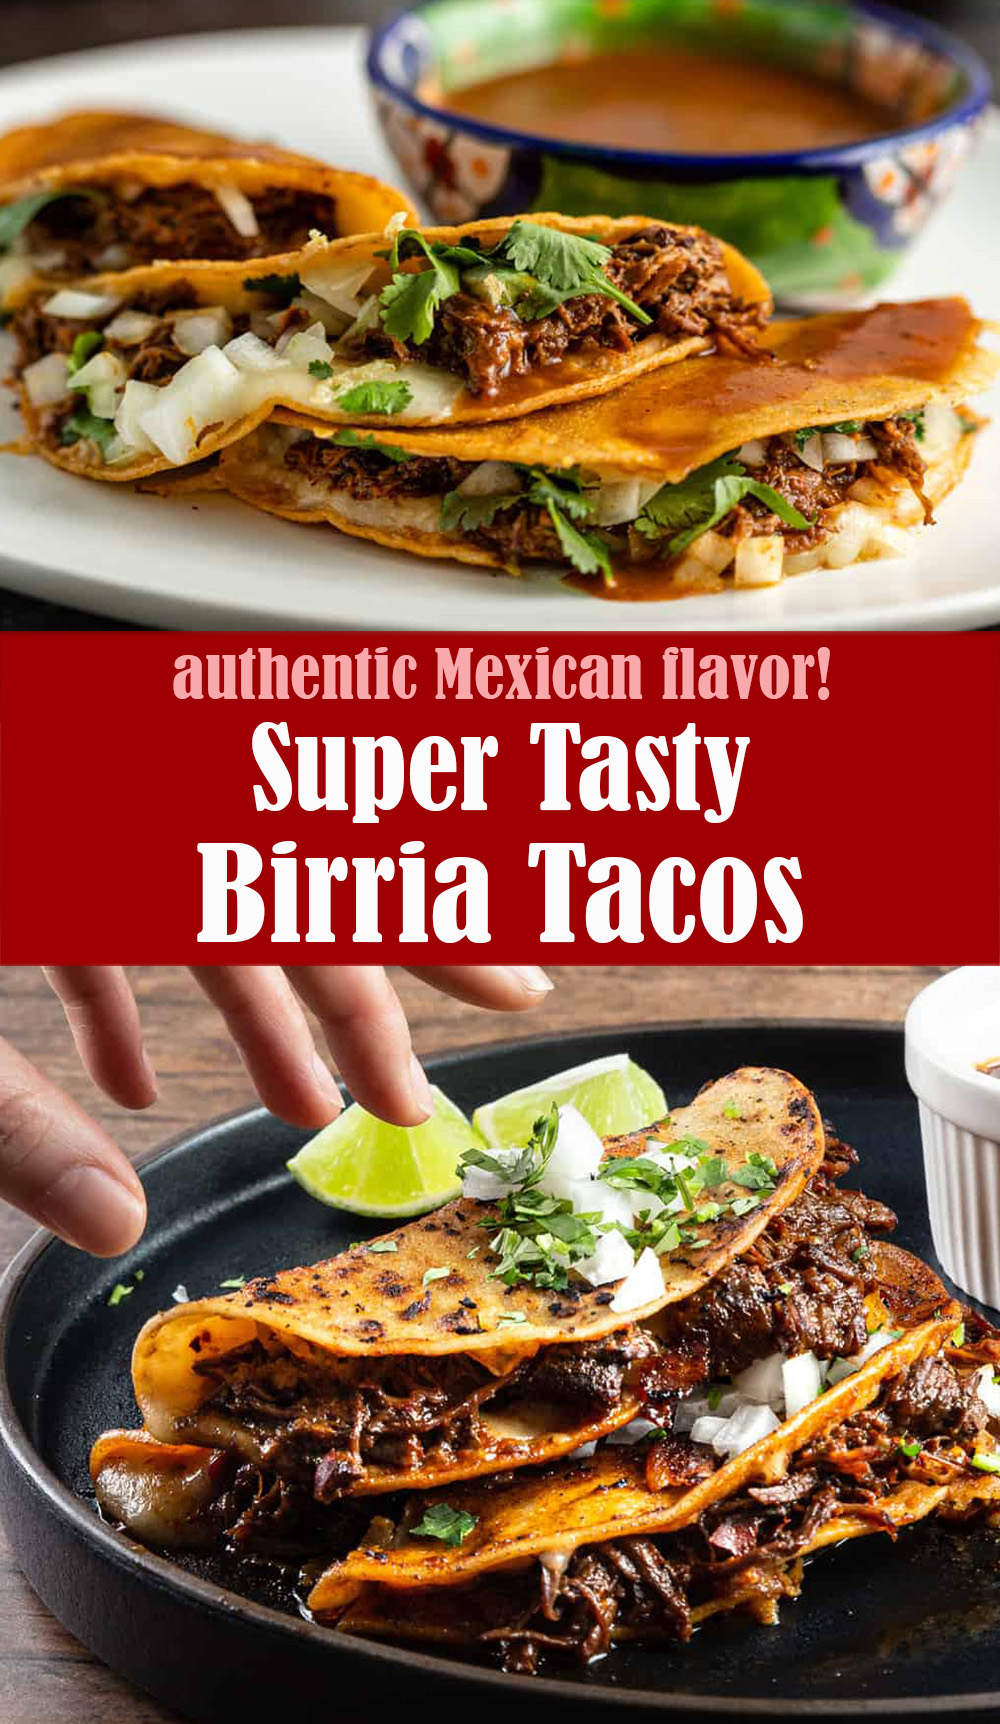 Super Tasty Birria Tacos Recipe